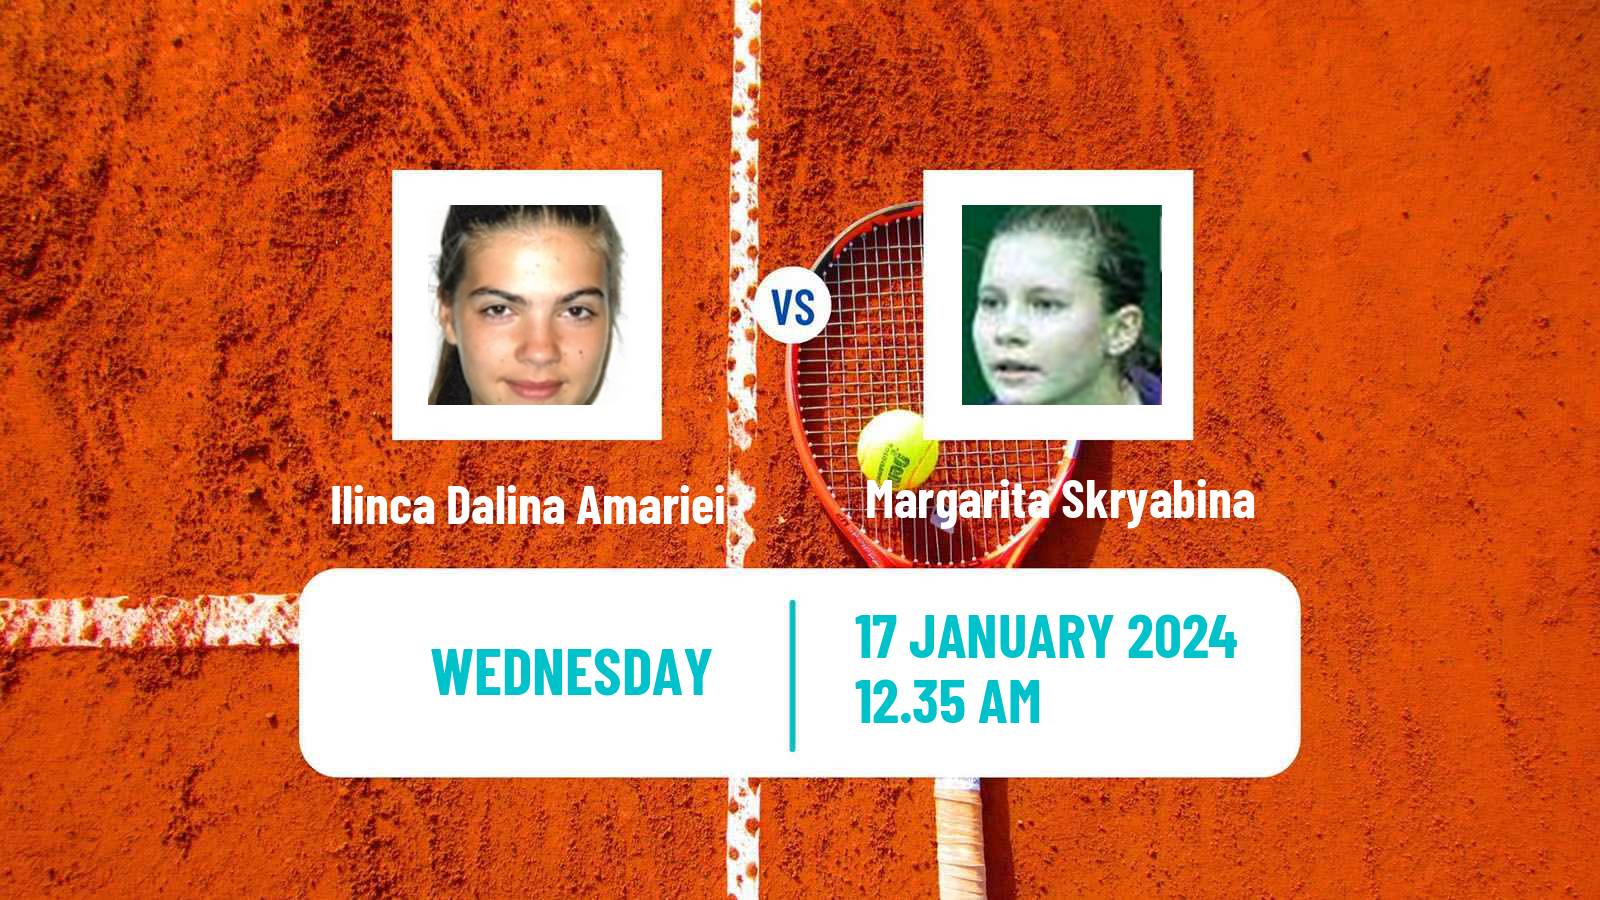 Tennis ITF W50 Antalya Women Ilinca Dalina Amariei - Margarita Skryabina